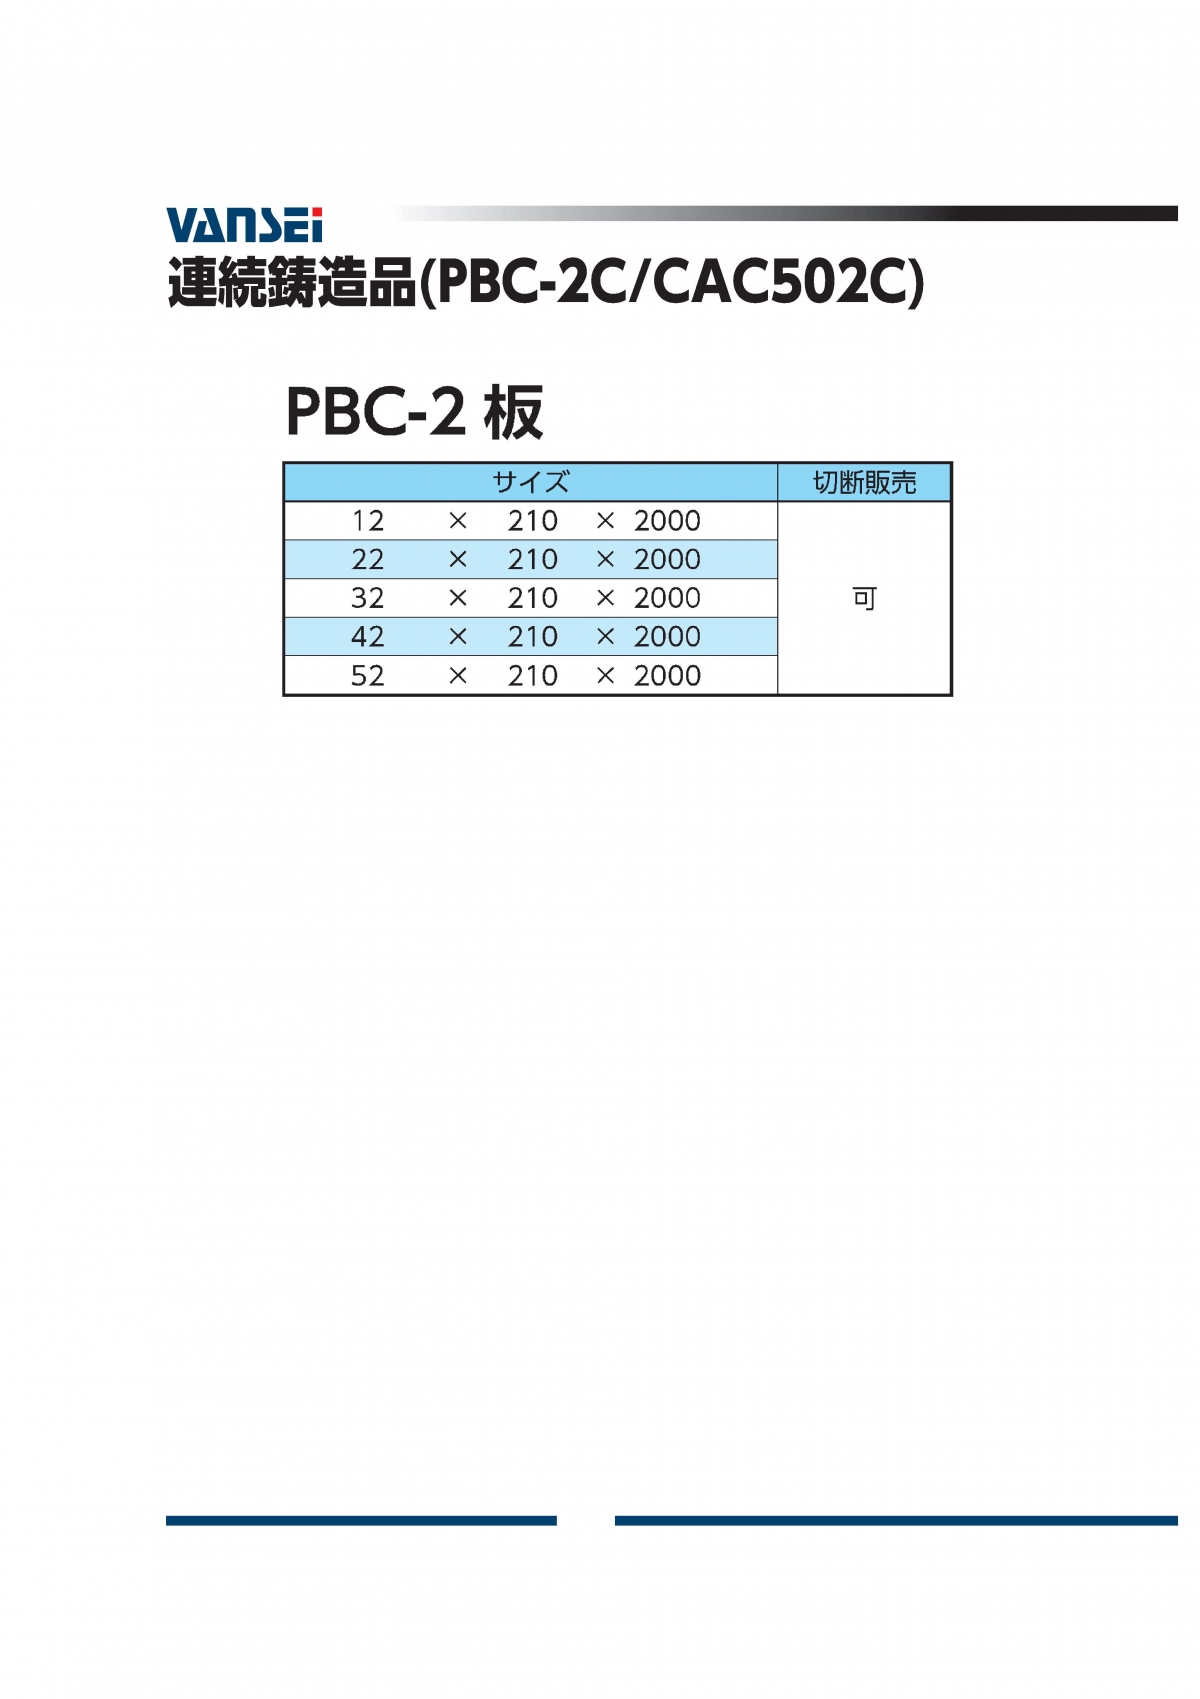 PBC-2板(CAC502C)